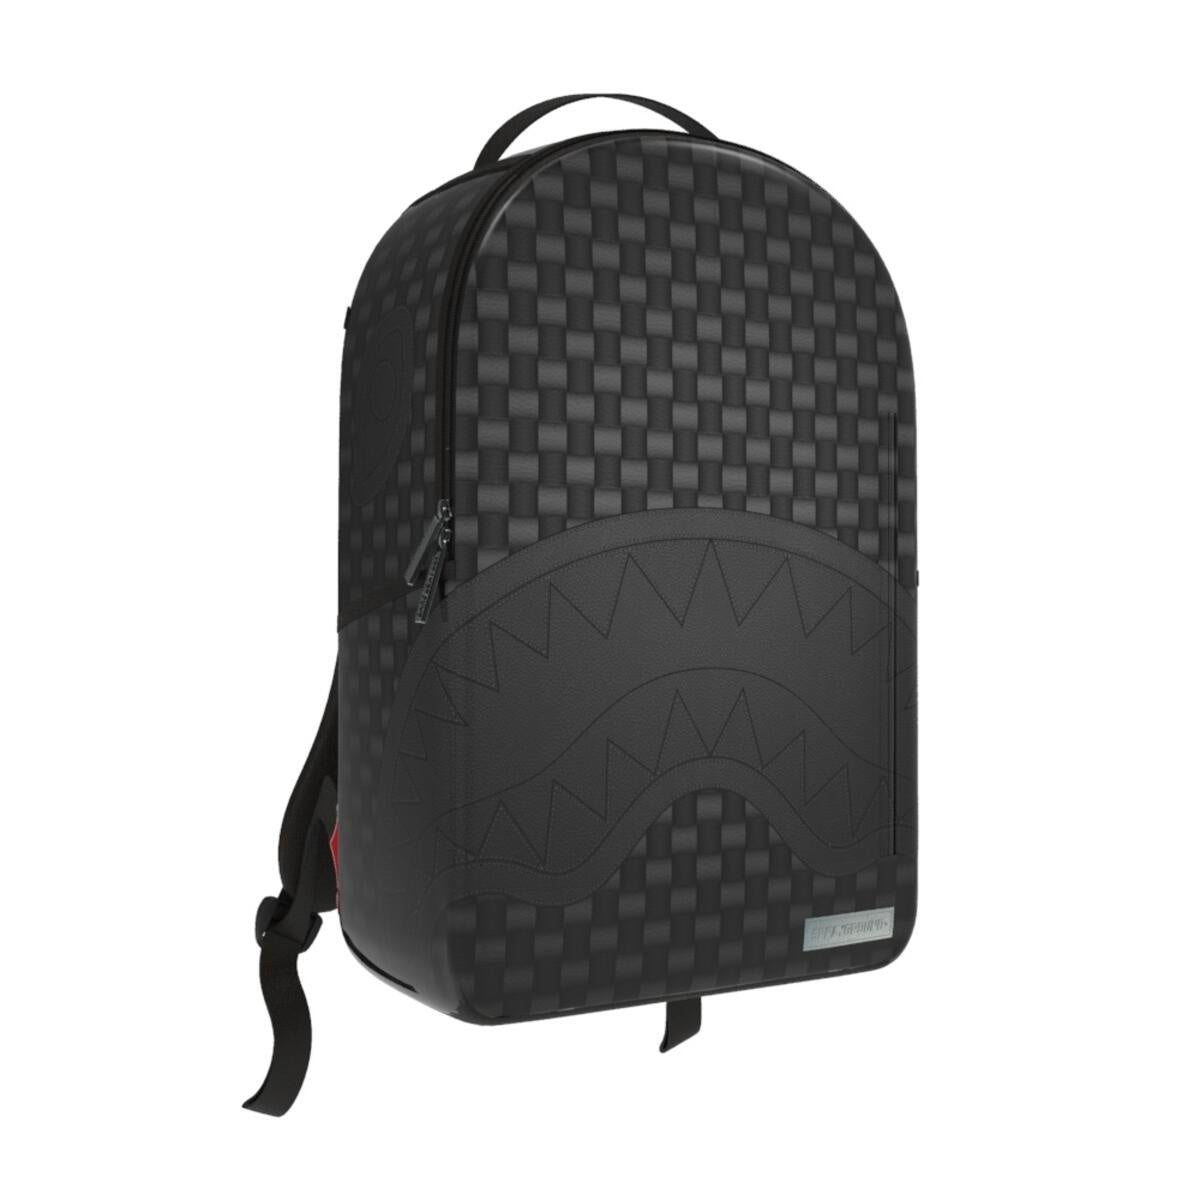 Sprayground Black Sip Weave DLXSV Backpack (B5297)